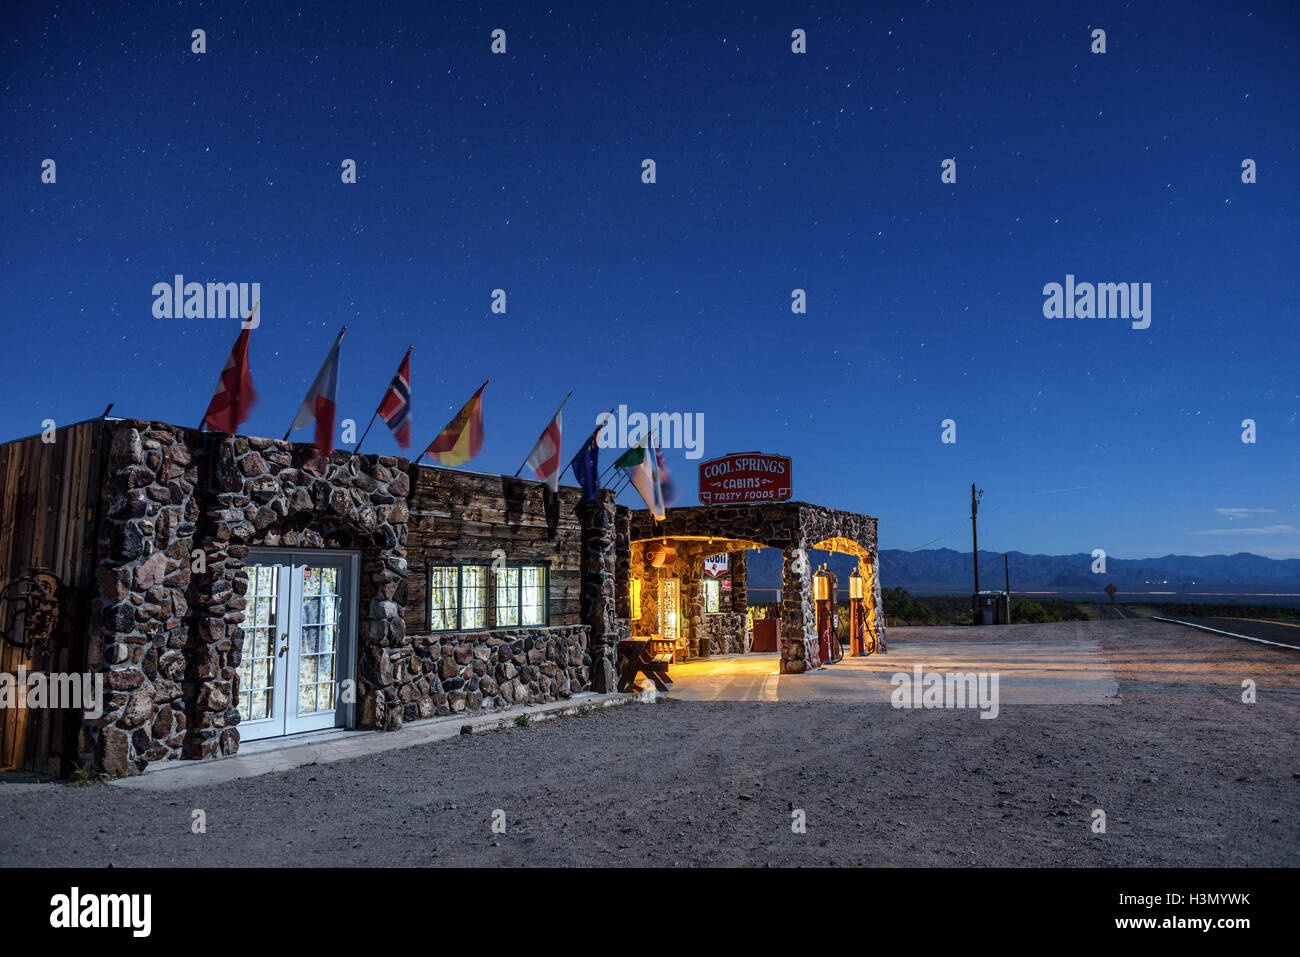 Cielo notturno con molte stelle sopra ricostruita Cool Springs station nel deserto di Mojave sulla storica Route 66 in Arizona Foto Stock